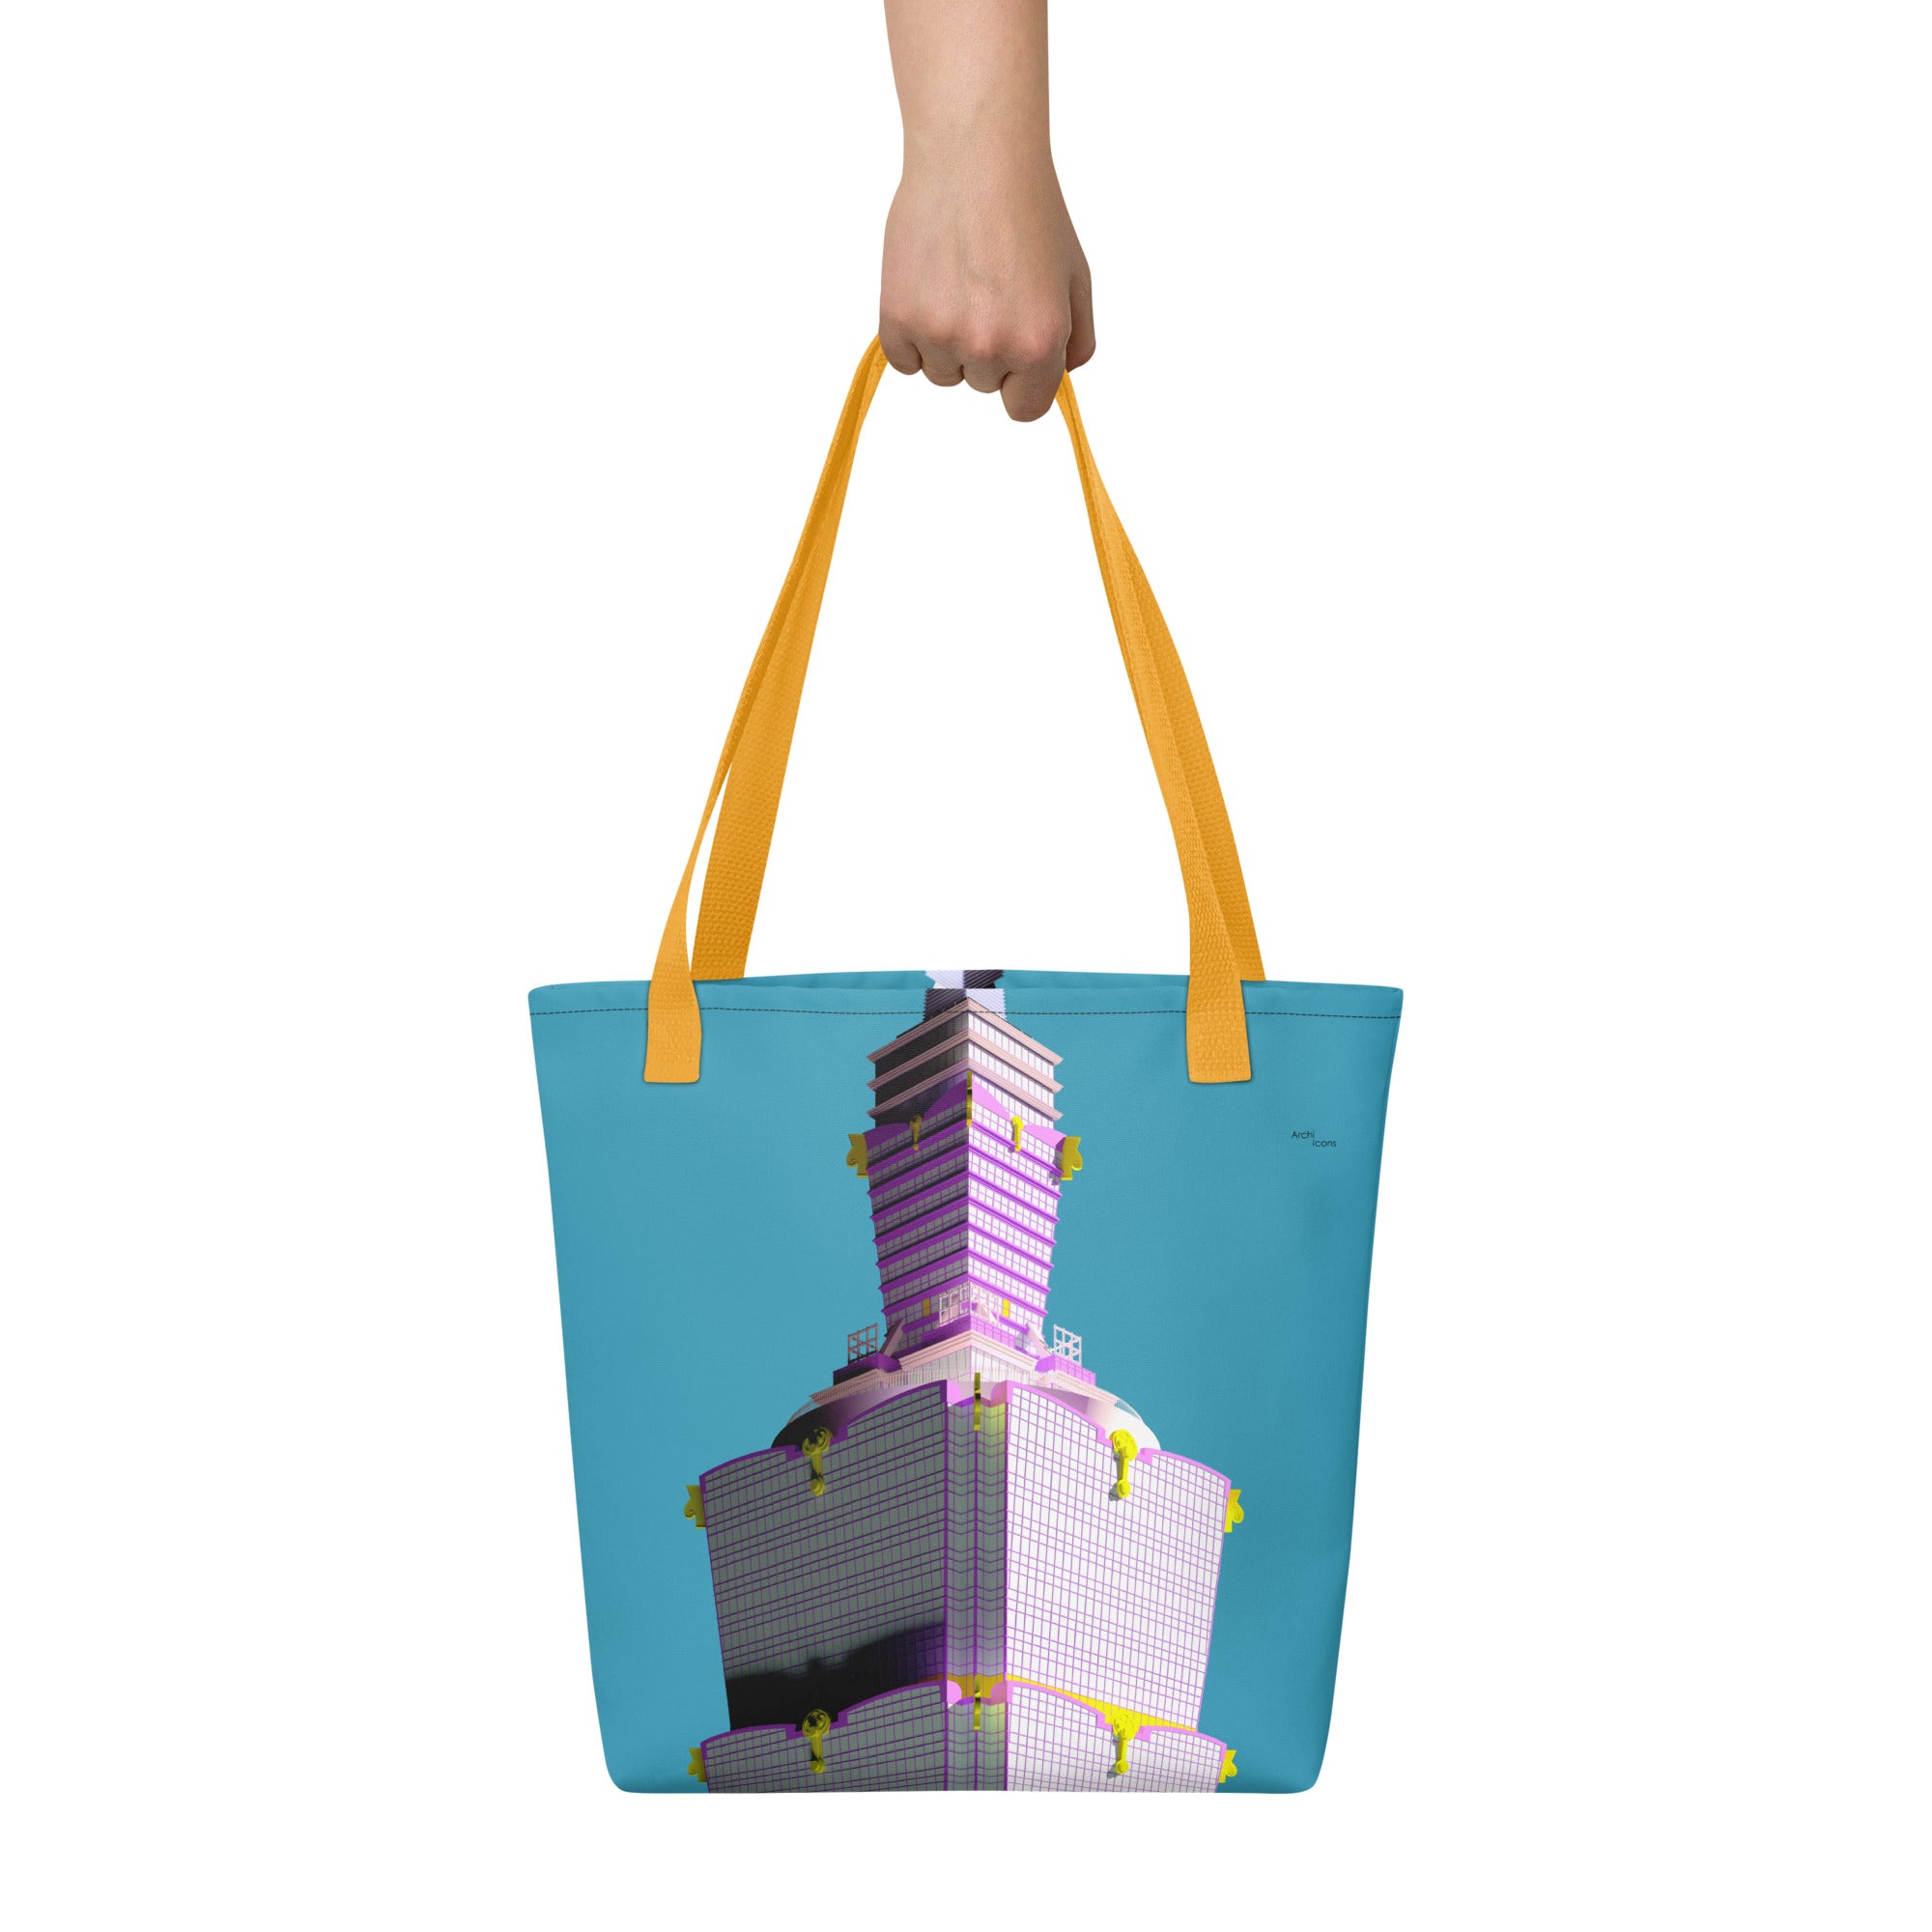 Taipei 101 Tote Bags